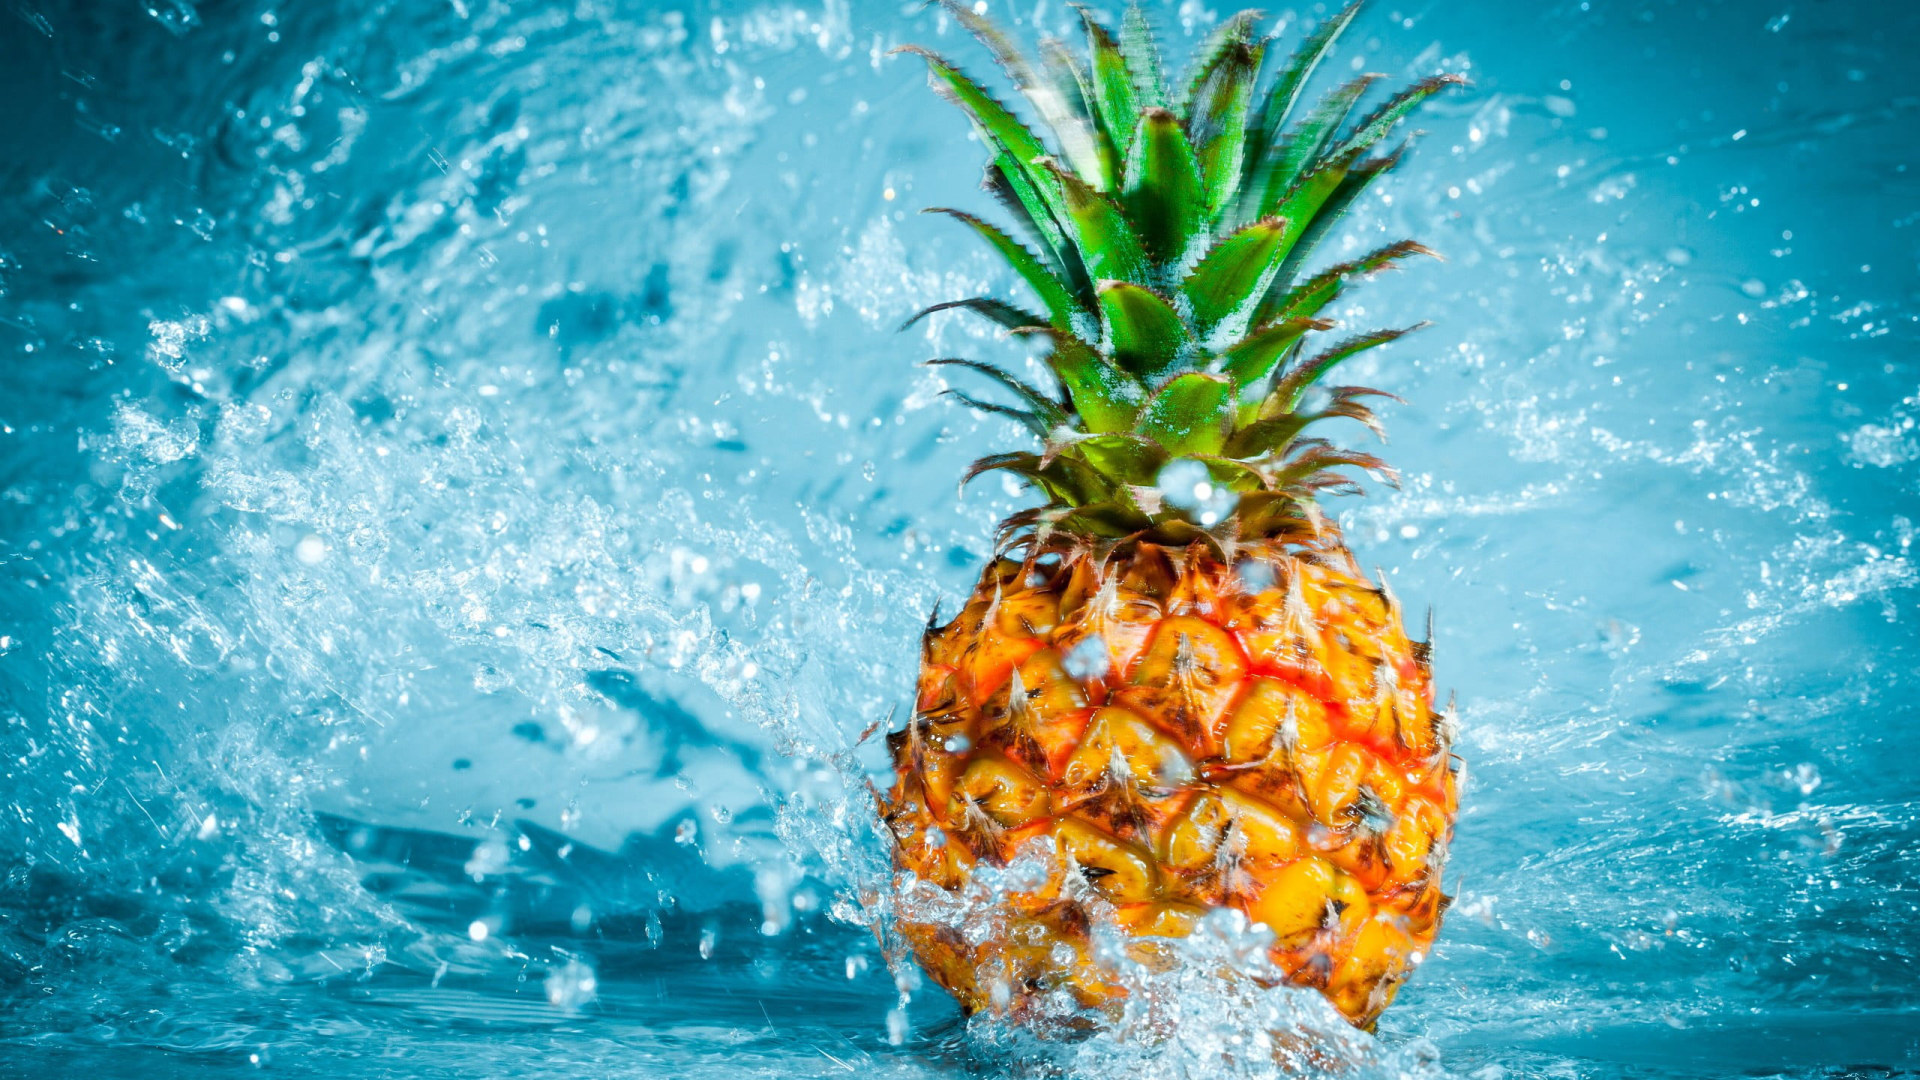 Pineapple fruit wallpaper, pineapples, water, food, motion, splashing, blue • Wallpaper For You HD Wallpaper For Desktop & Mobile